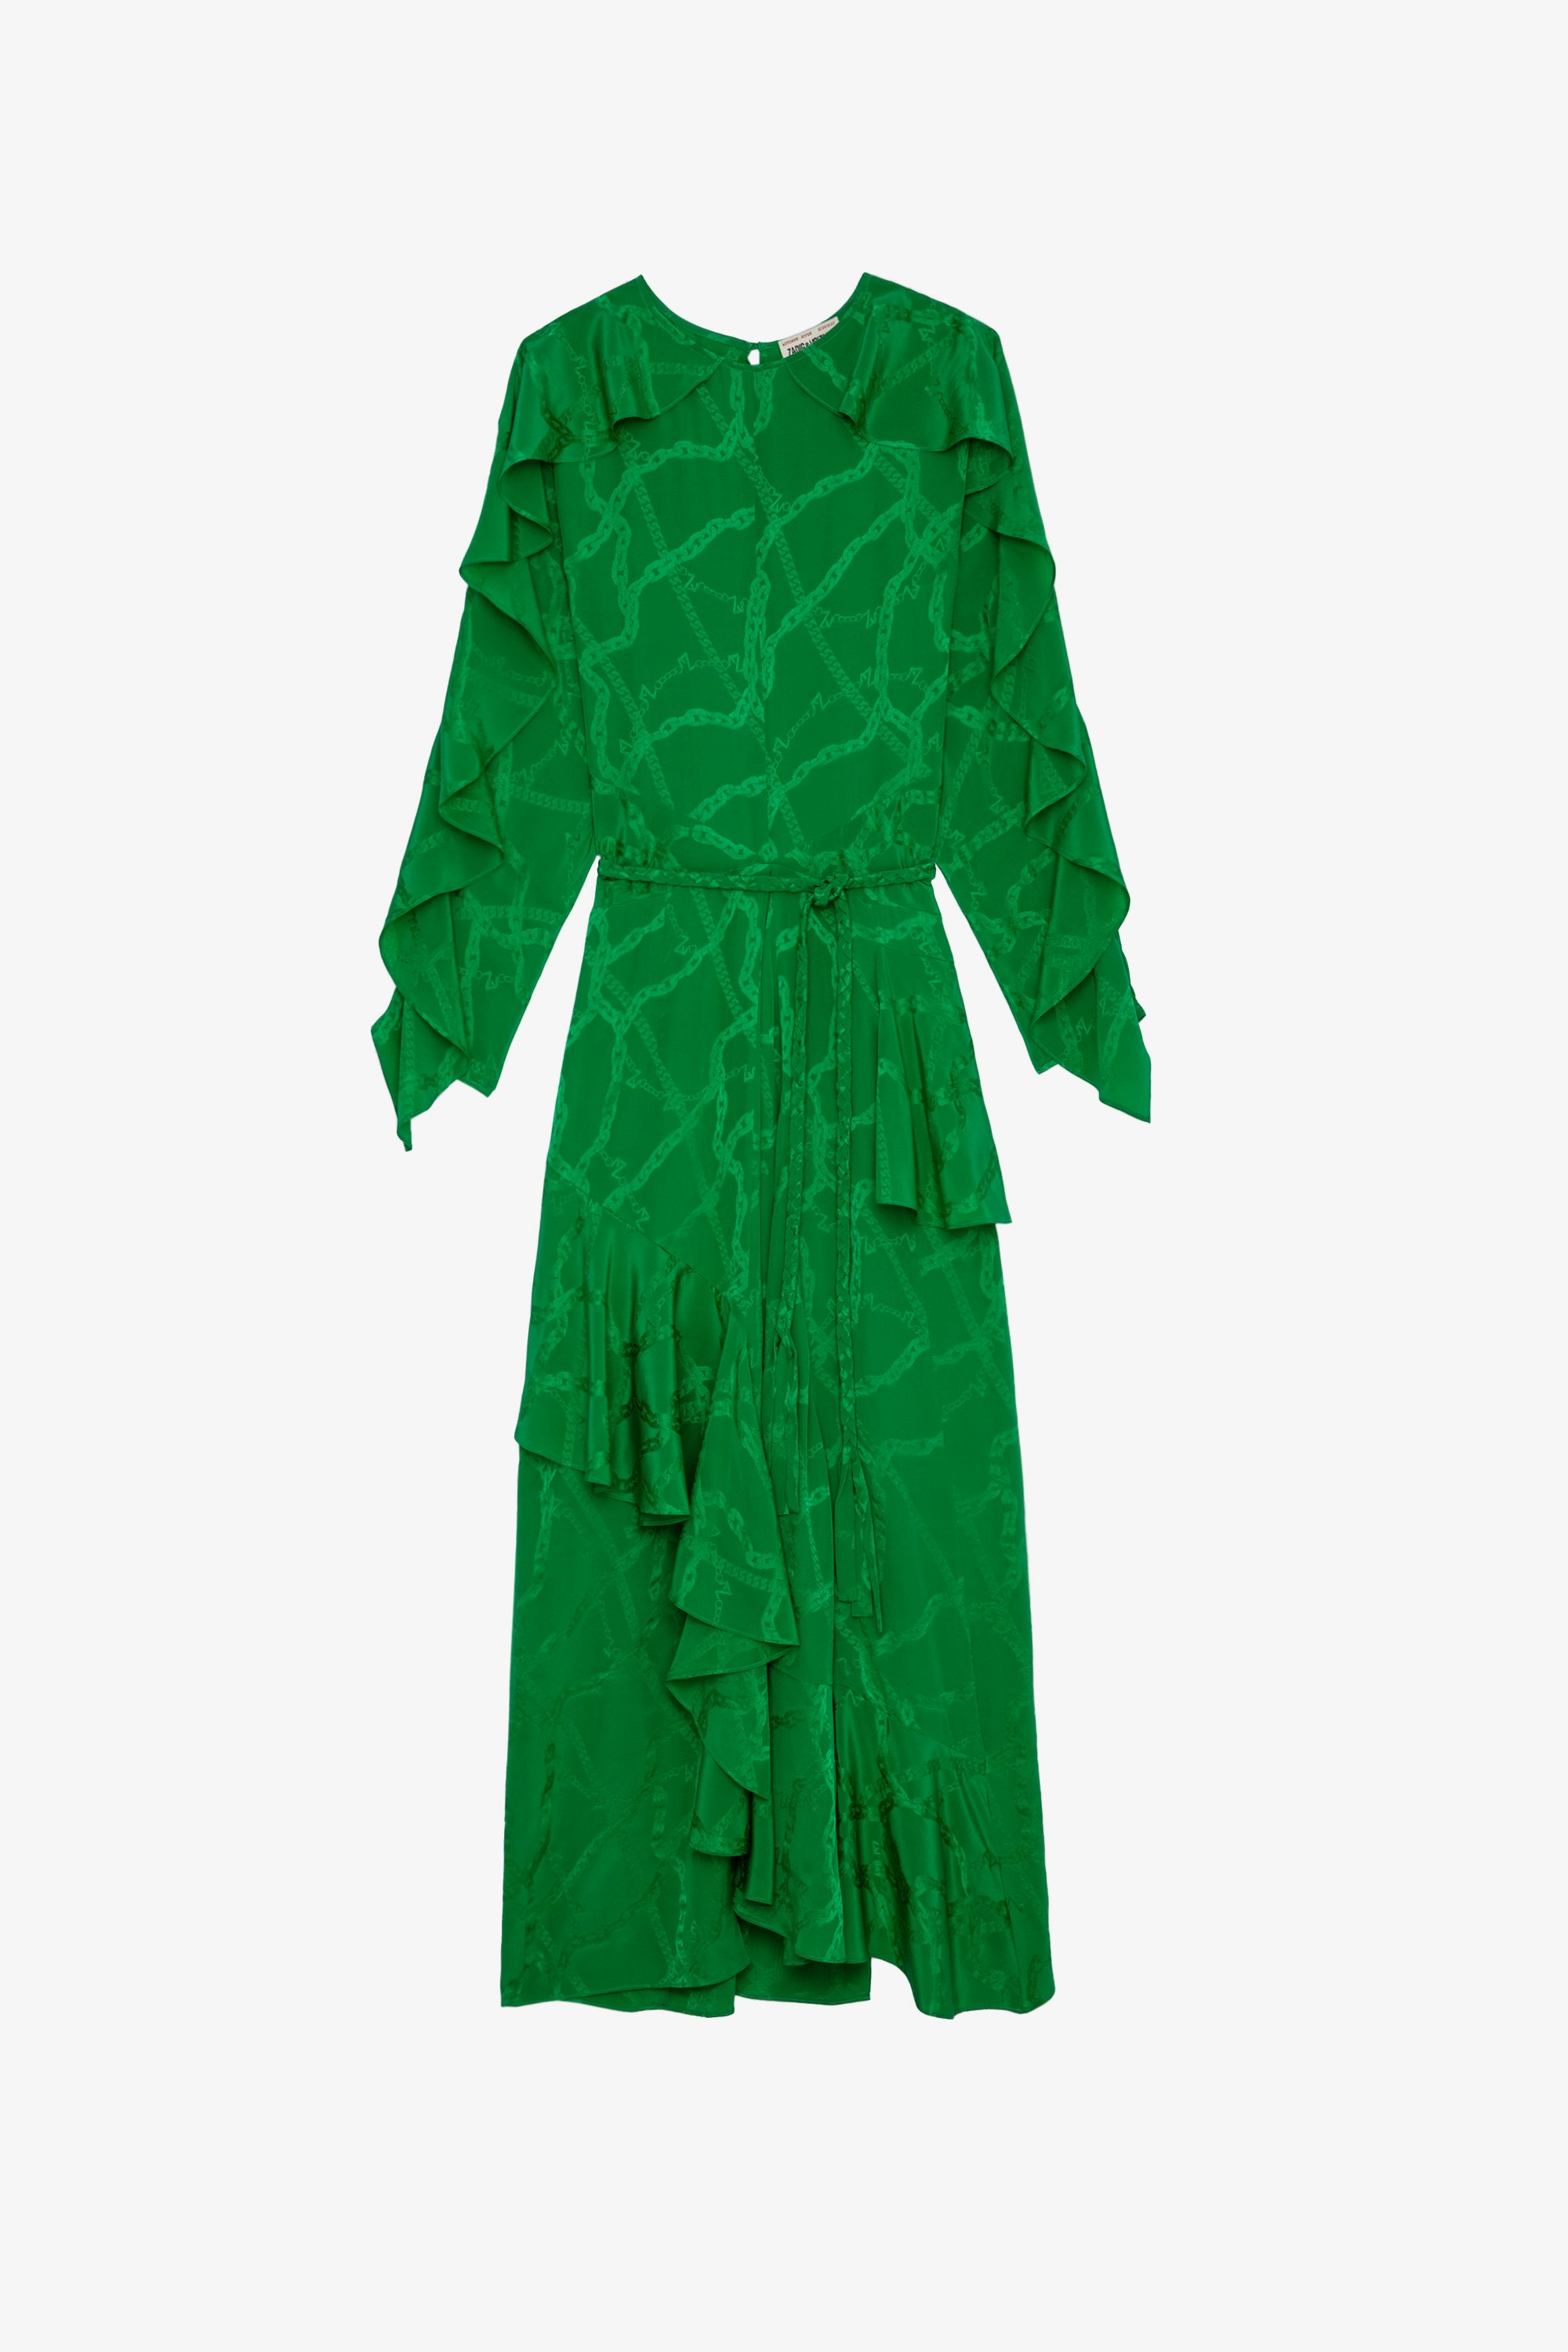 Kleid Ritana Ketten Seide Langes Damenkleid aus grüner Seide mit drapierter Optik und ZV-Ketten-Jacquard, das an der Taille mit einem geflochtenen Gürtel gebunden wird 